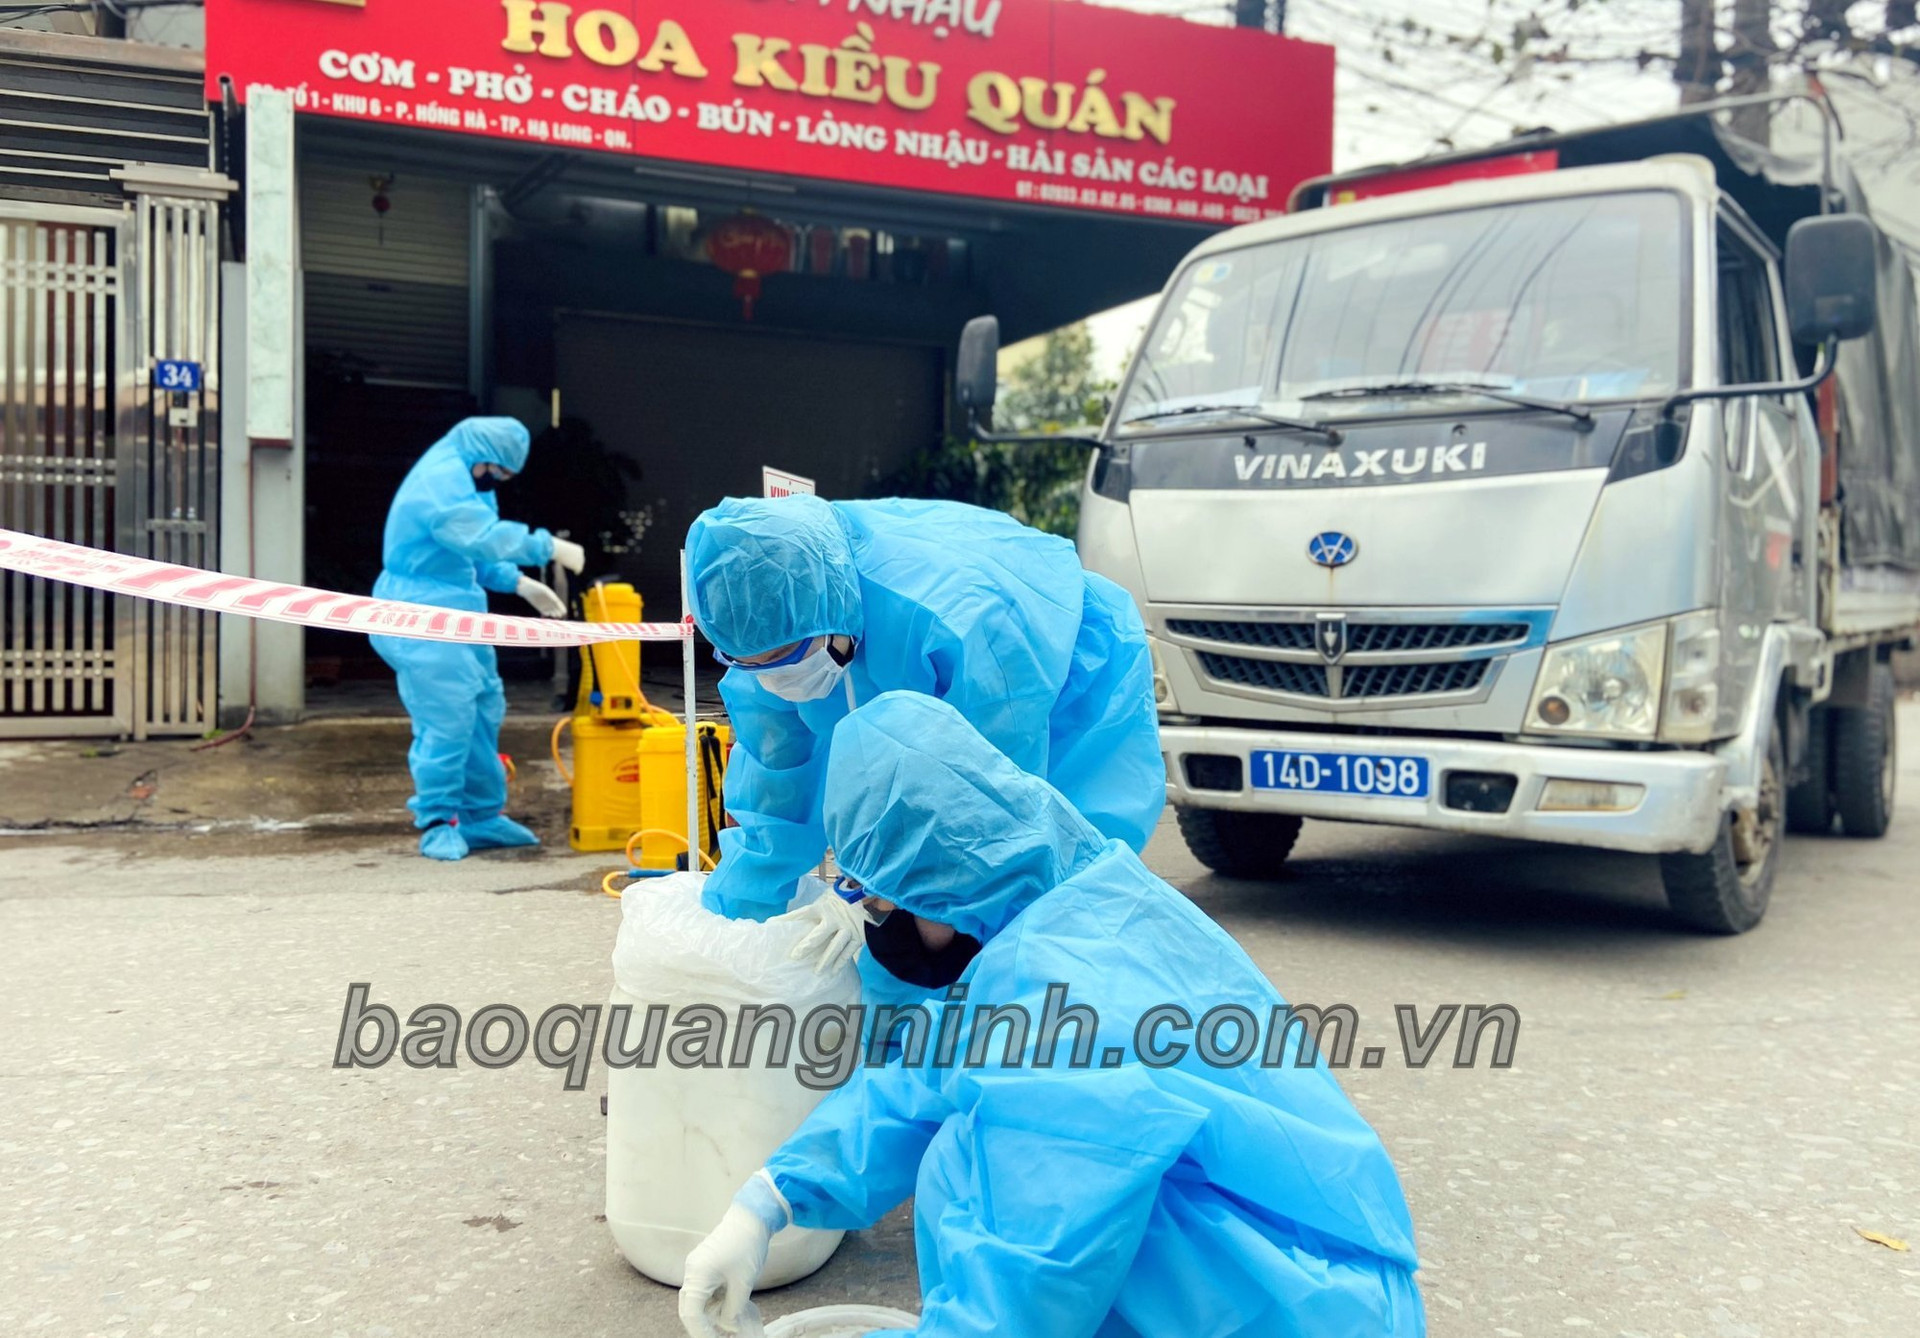 Lực lượng y tế TP Hạ Long tổ chức phun khử khuẩn khu vực tổ 1, khu 6, phường Hồng Hà, sáng ngày 28/1. Ảnh: Minh Hà